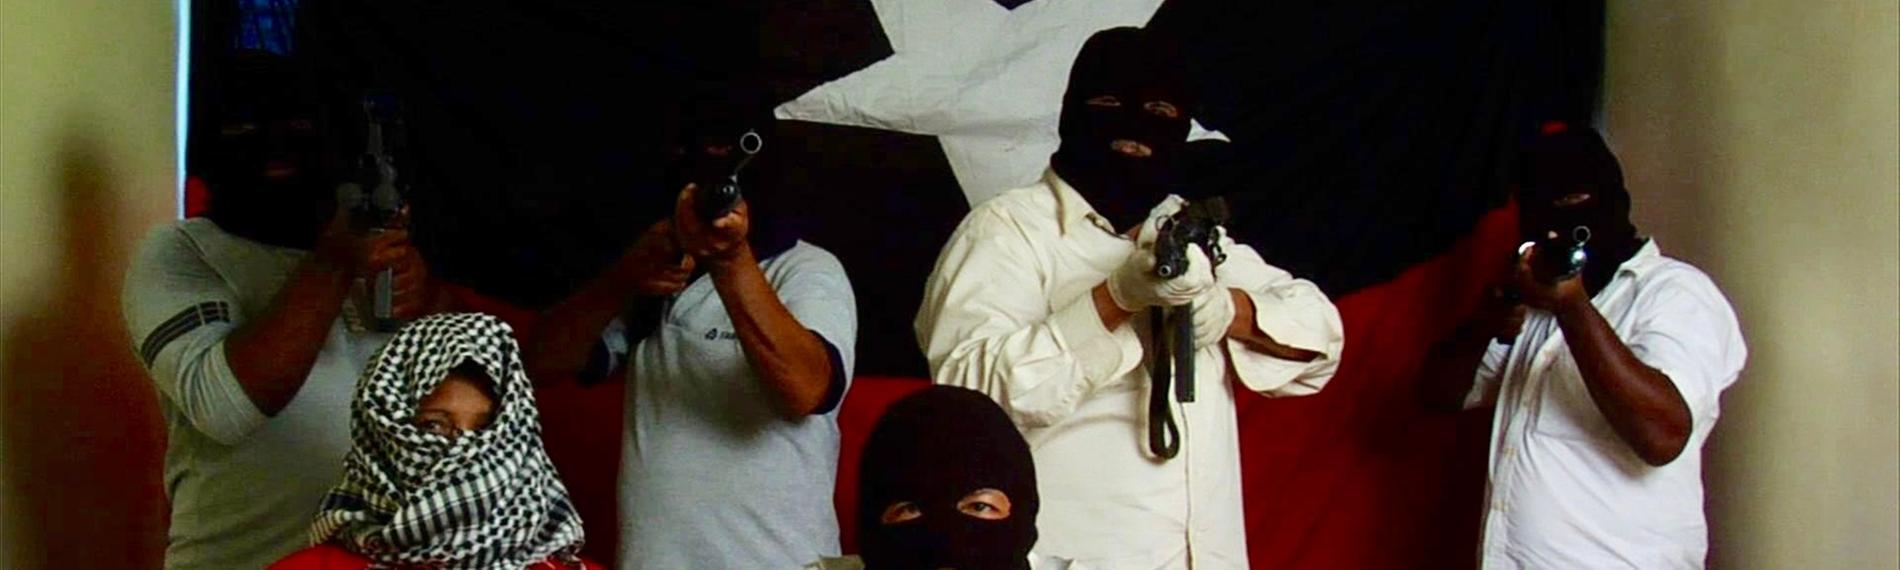 "Die Schlägertrupps des Präsidenten - Venezuela im Würgegriff von Stadtguerillas": Maskierte Männer mit Gewehren vor einer rot-blauen Flagge mit weißem Stern.